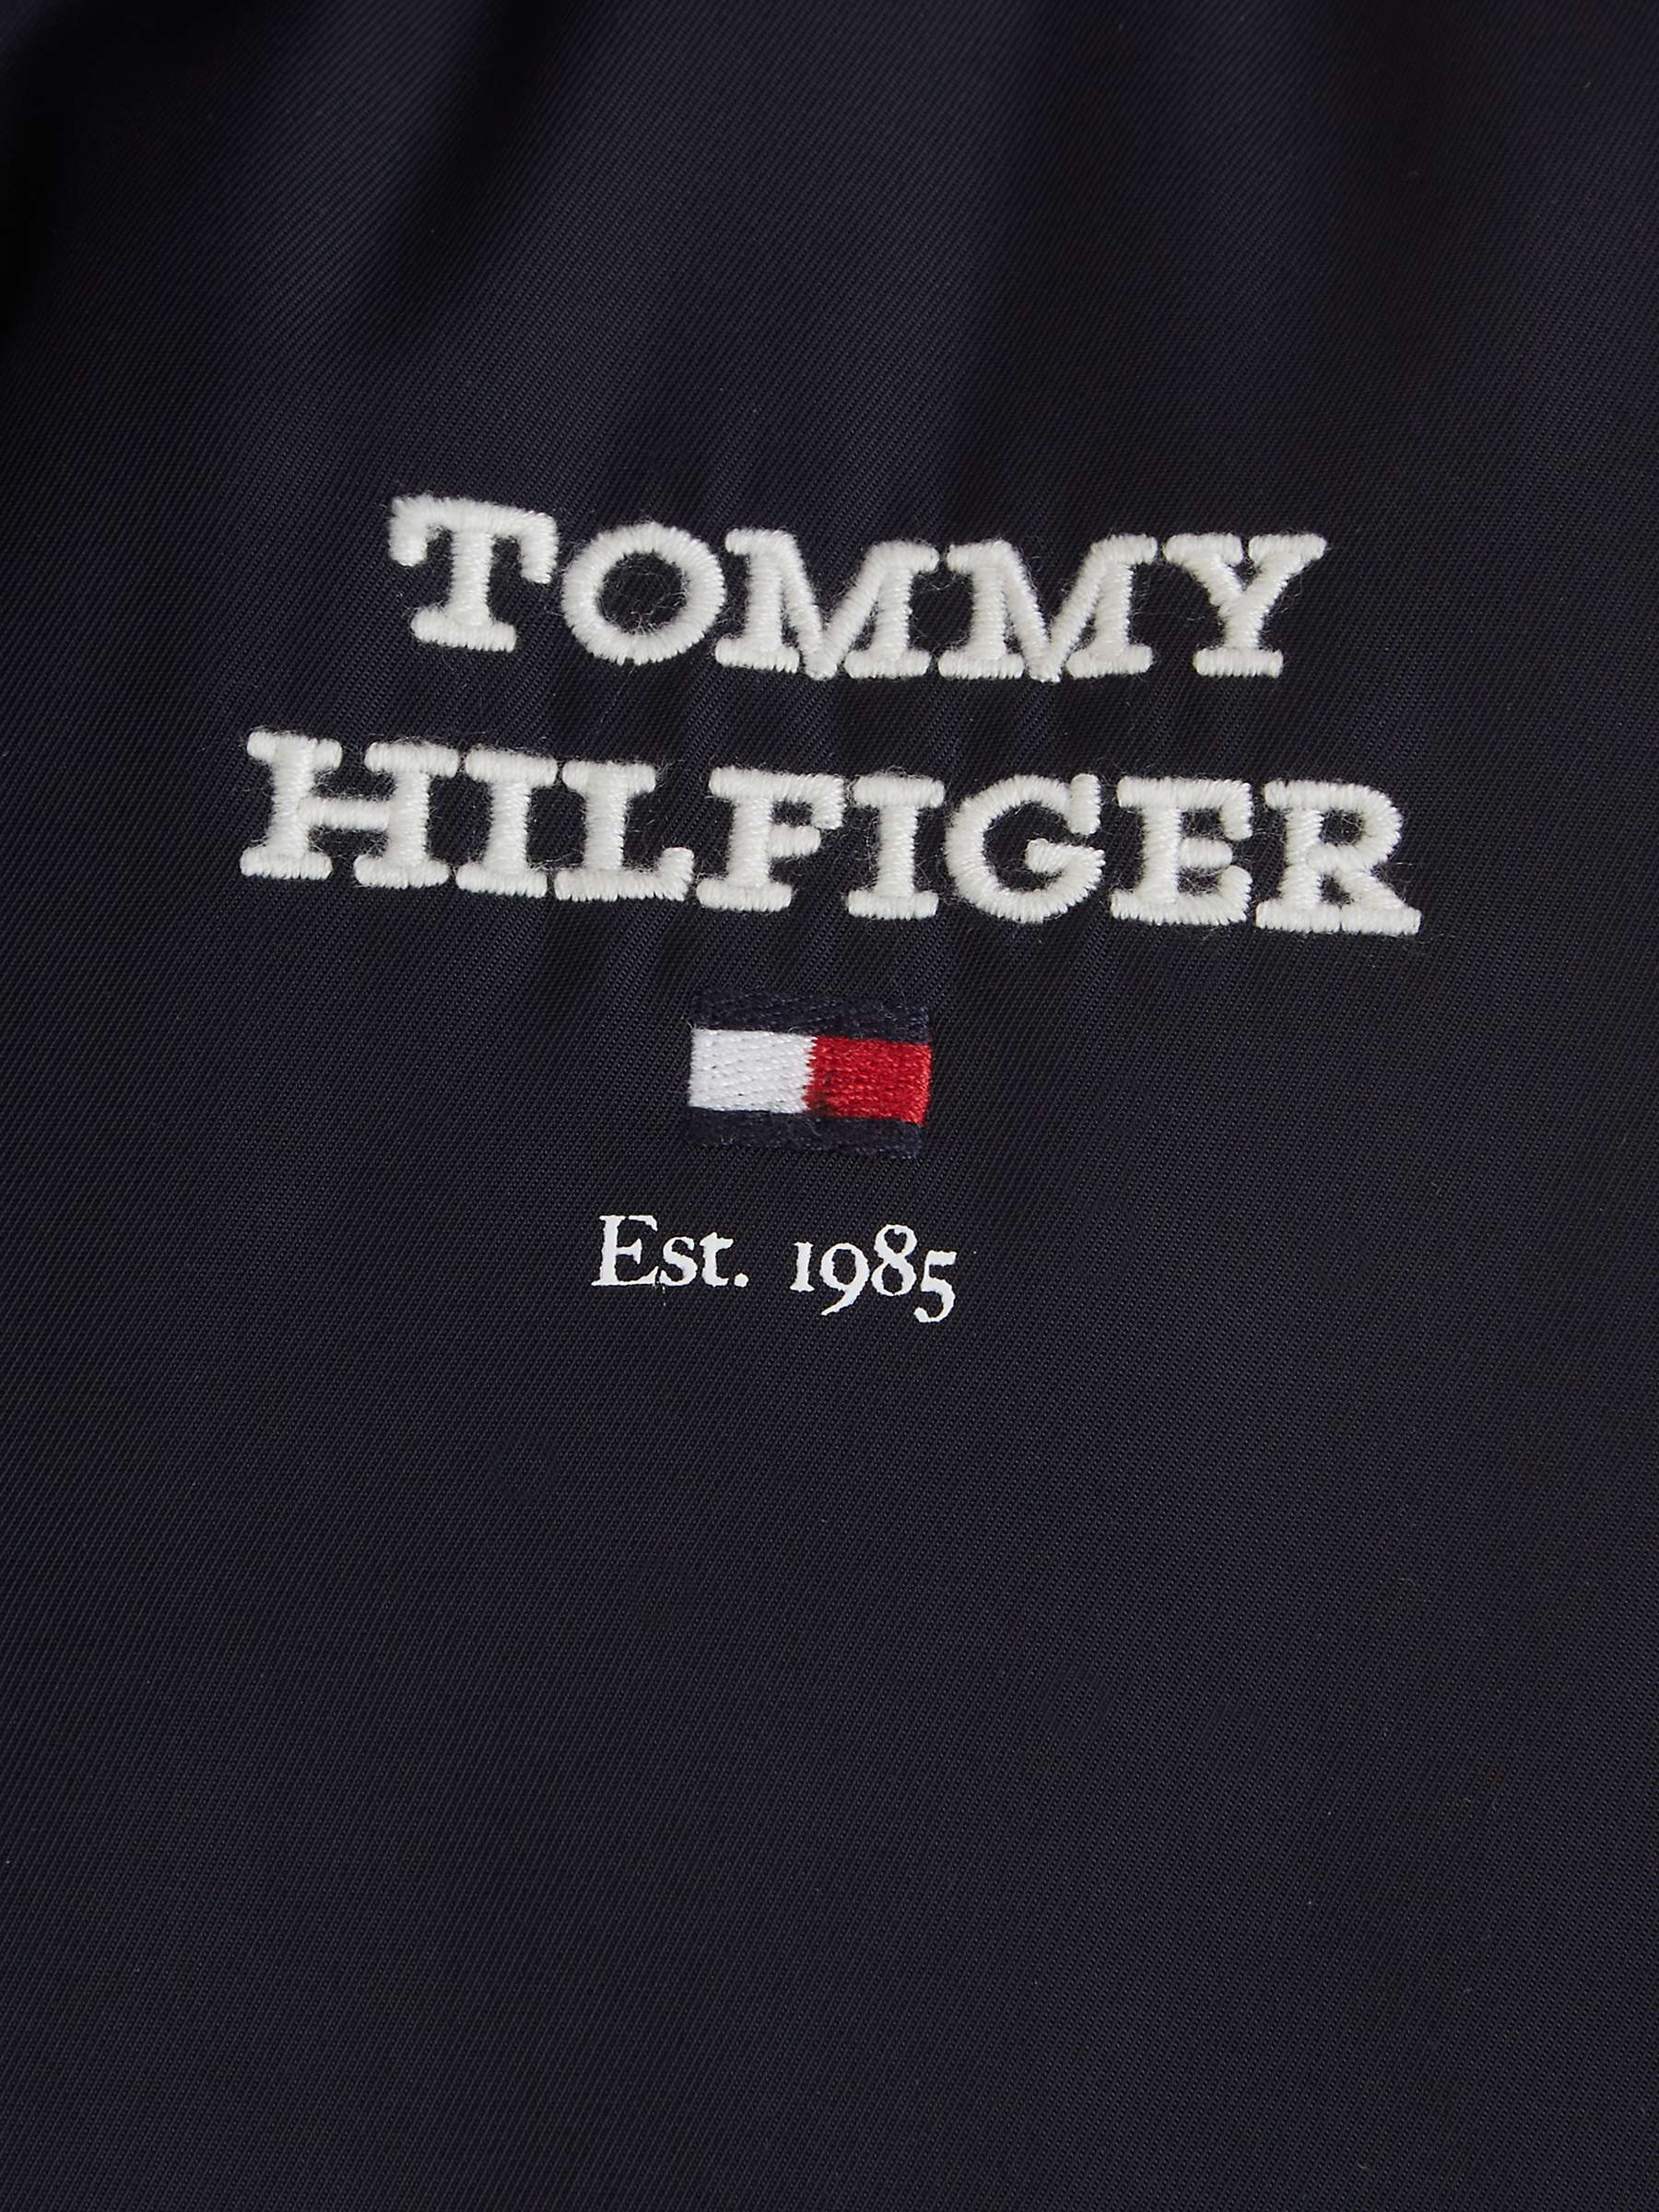 Buy Tommy Hilfiger Kids' Logo Hooded Bomber Jacket, Desert Sky Online at johnlewis.com